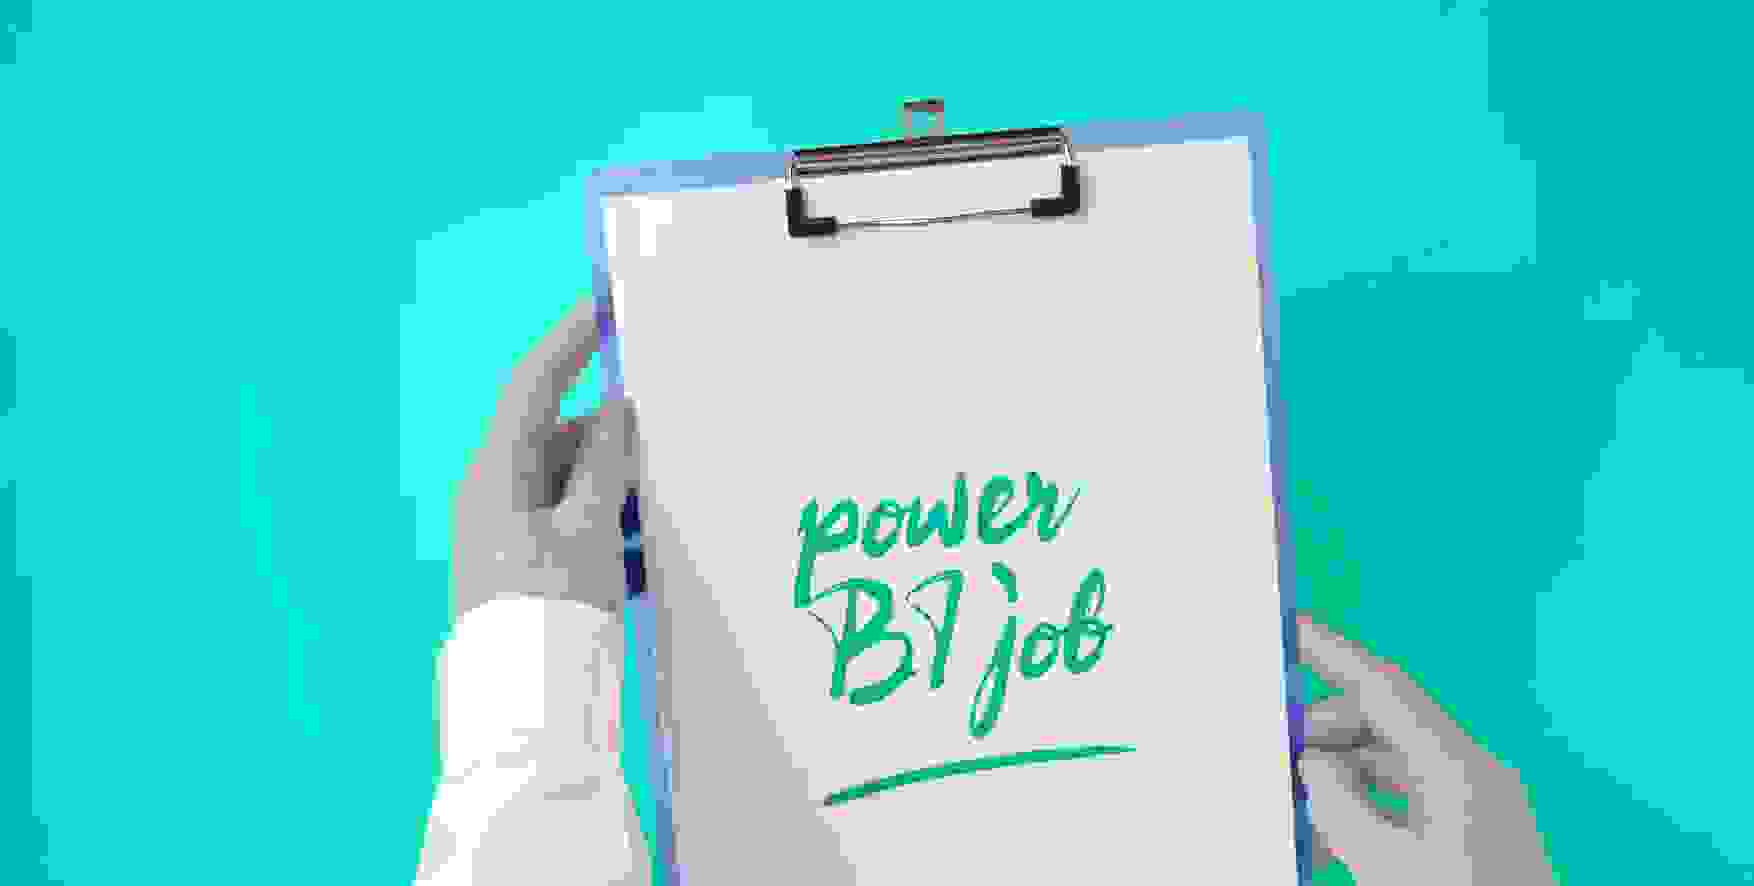 Power BI job written on a piece of paper in a clipboard